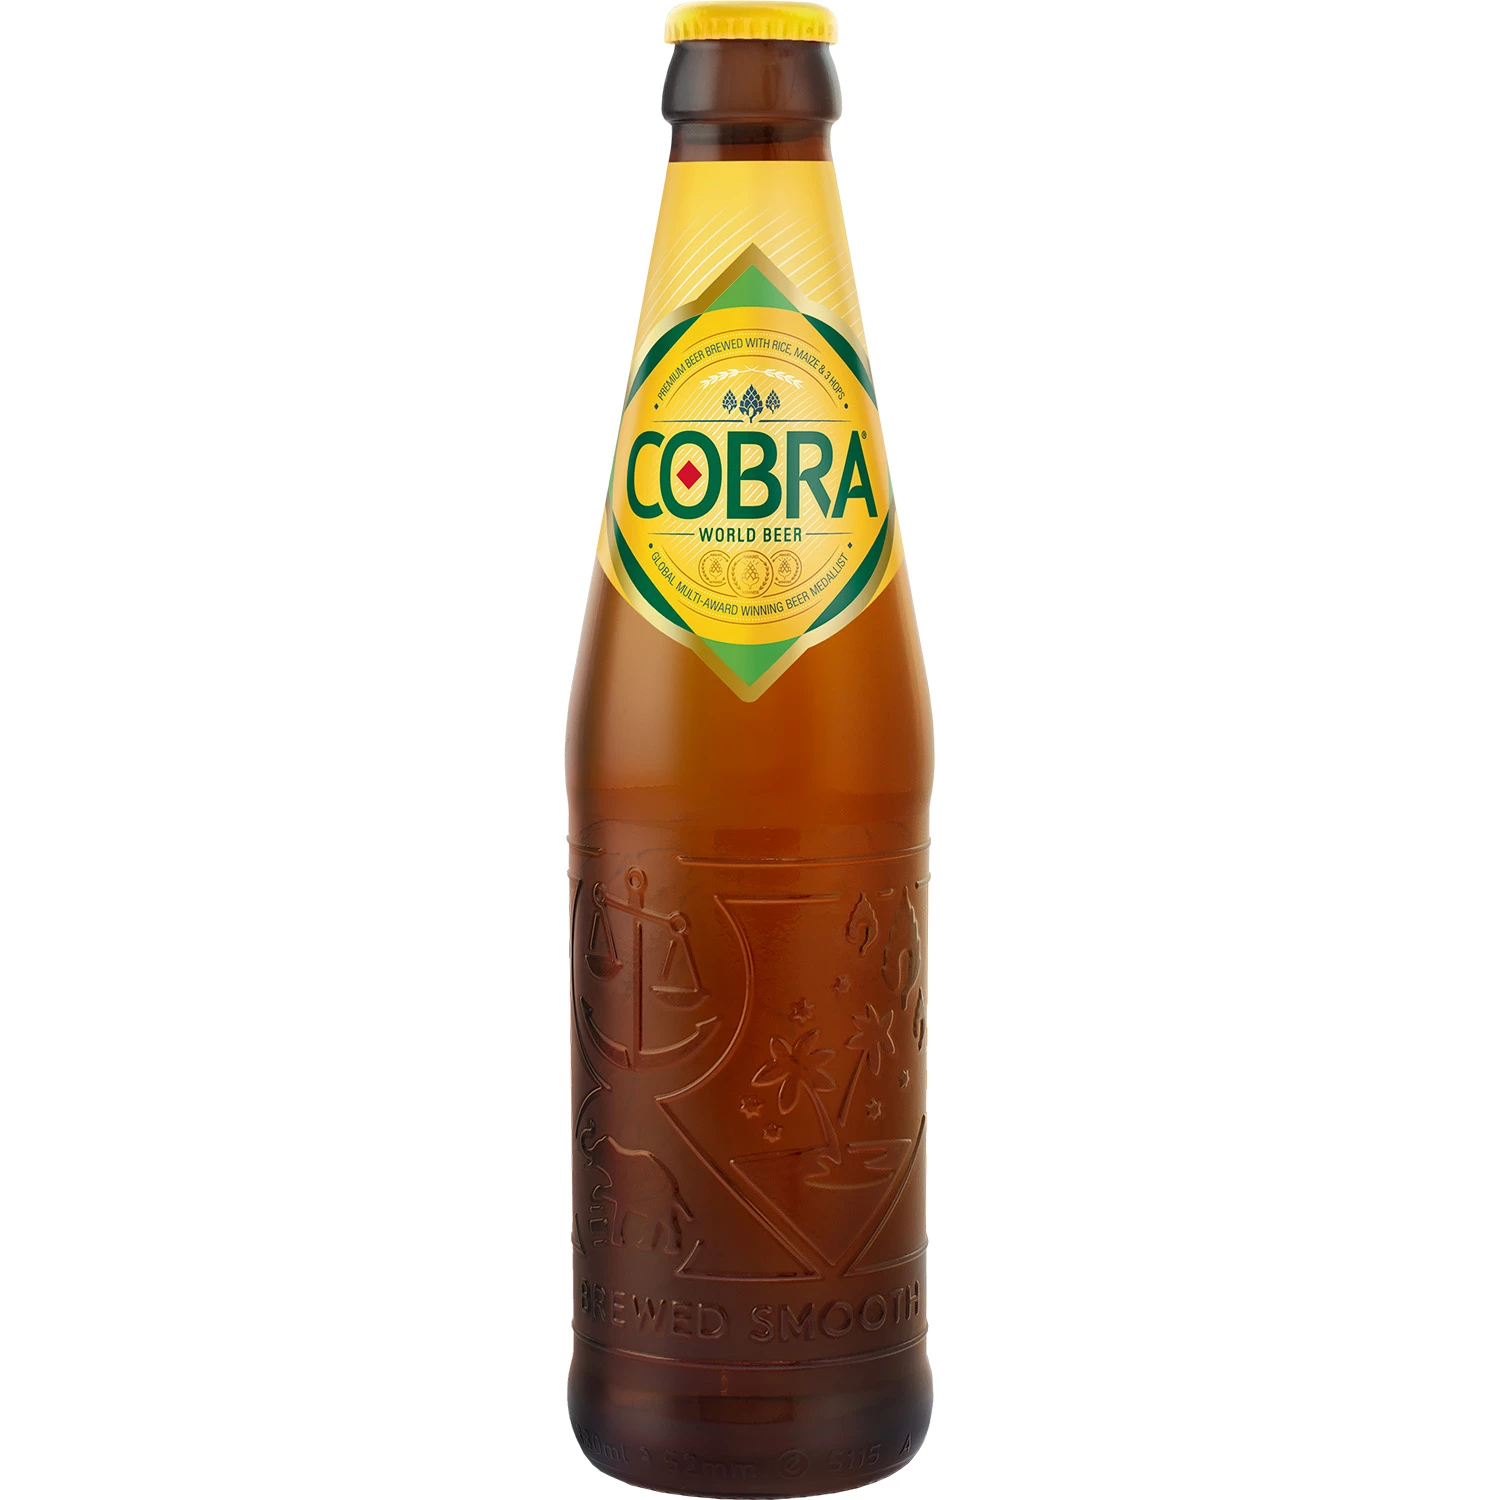 Biere 4.5% Alc. - Plato 10.5 - Cobra